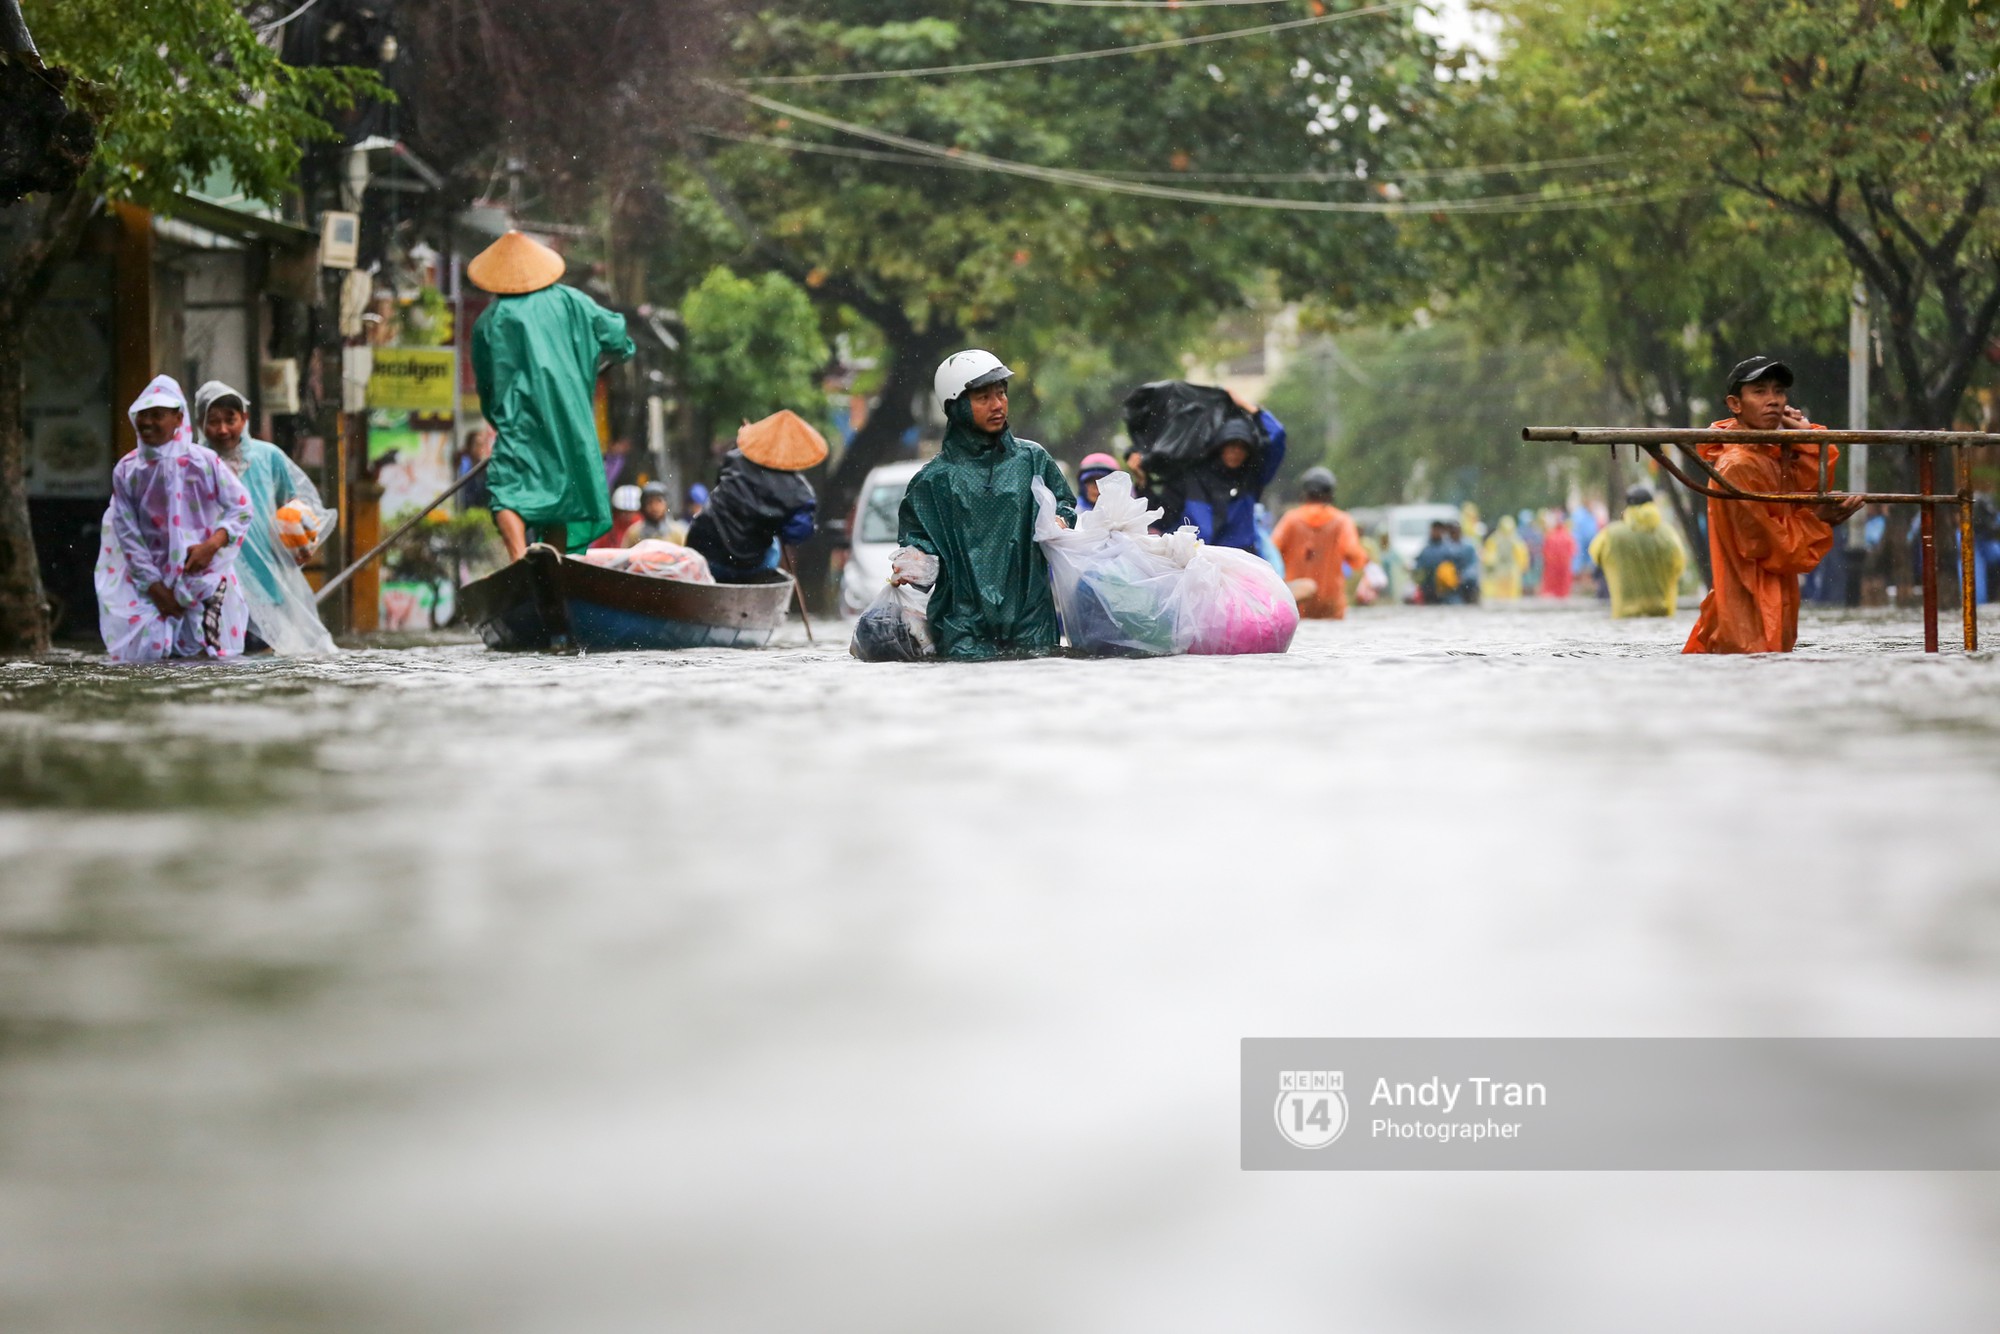 Chùm ảnh: Hội An nước ngập thành sông do ảnh hưởng của bão, người dân và du khách chật vật dùng thuyền bè di chuyển - Ảnh 14.